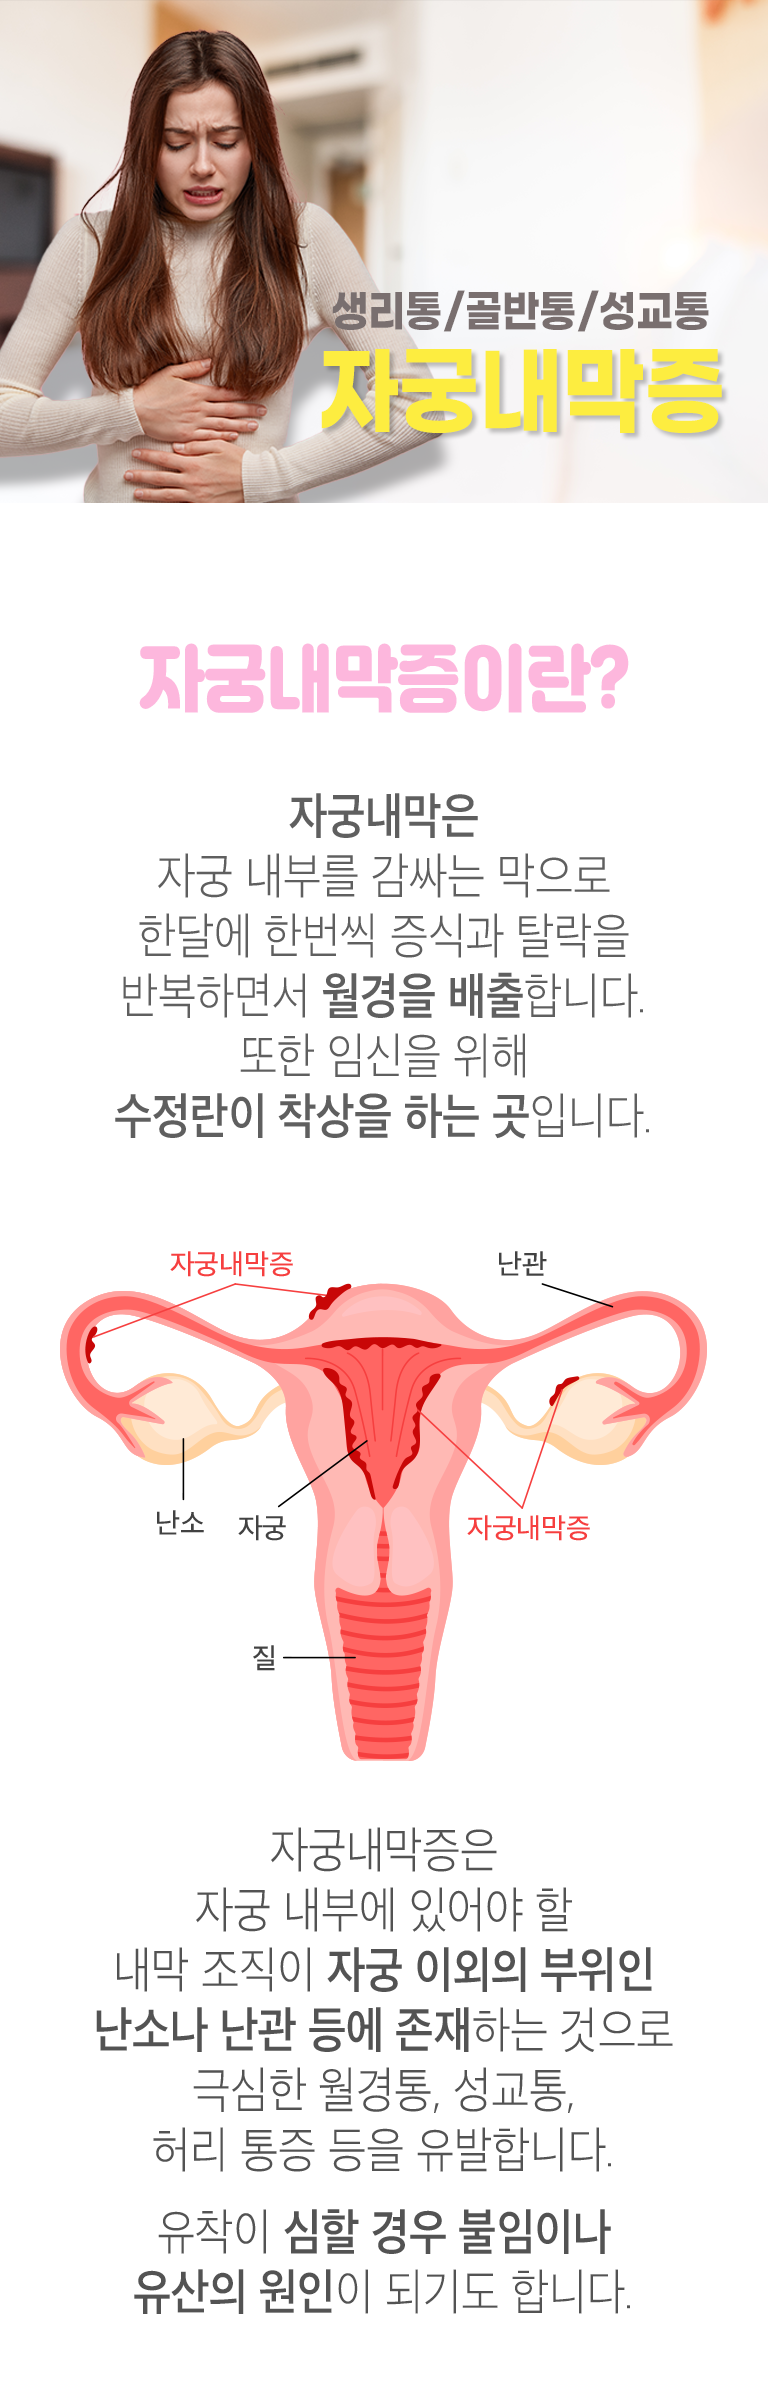 생리통/골반통/성교통 자궁내막증. 자궁내막증이란? ▷ 자궁내막은 자궁 내부를 감싸는 막으로 한달에 한번씩 증식과 탈락을 반복하면서 월경을 배출합니다. 또한 임신을 위해 수정란이 착상을 하는 곳입니다. 자궁내막증은 자궁 내부에 있어야 할 내막 조직이 자궁 이외의 부위인 난소나 난관 등에 존재하는 것으로 극심한 월경통, 성교통, 허리 통증 등을 유발합니다. 유착이 심할 경우 불임이나 유산의 원인이 되기도 합니다.